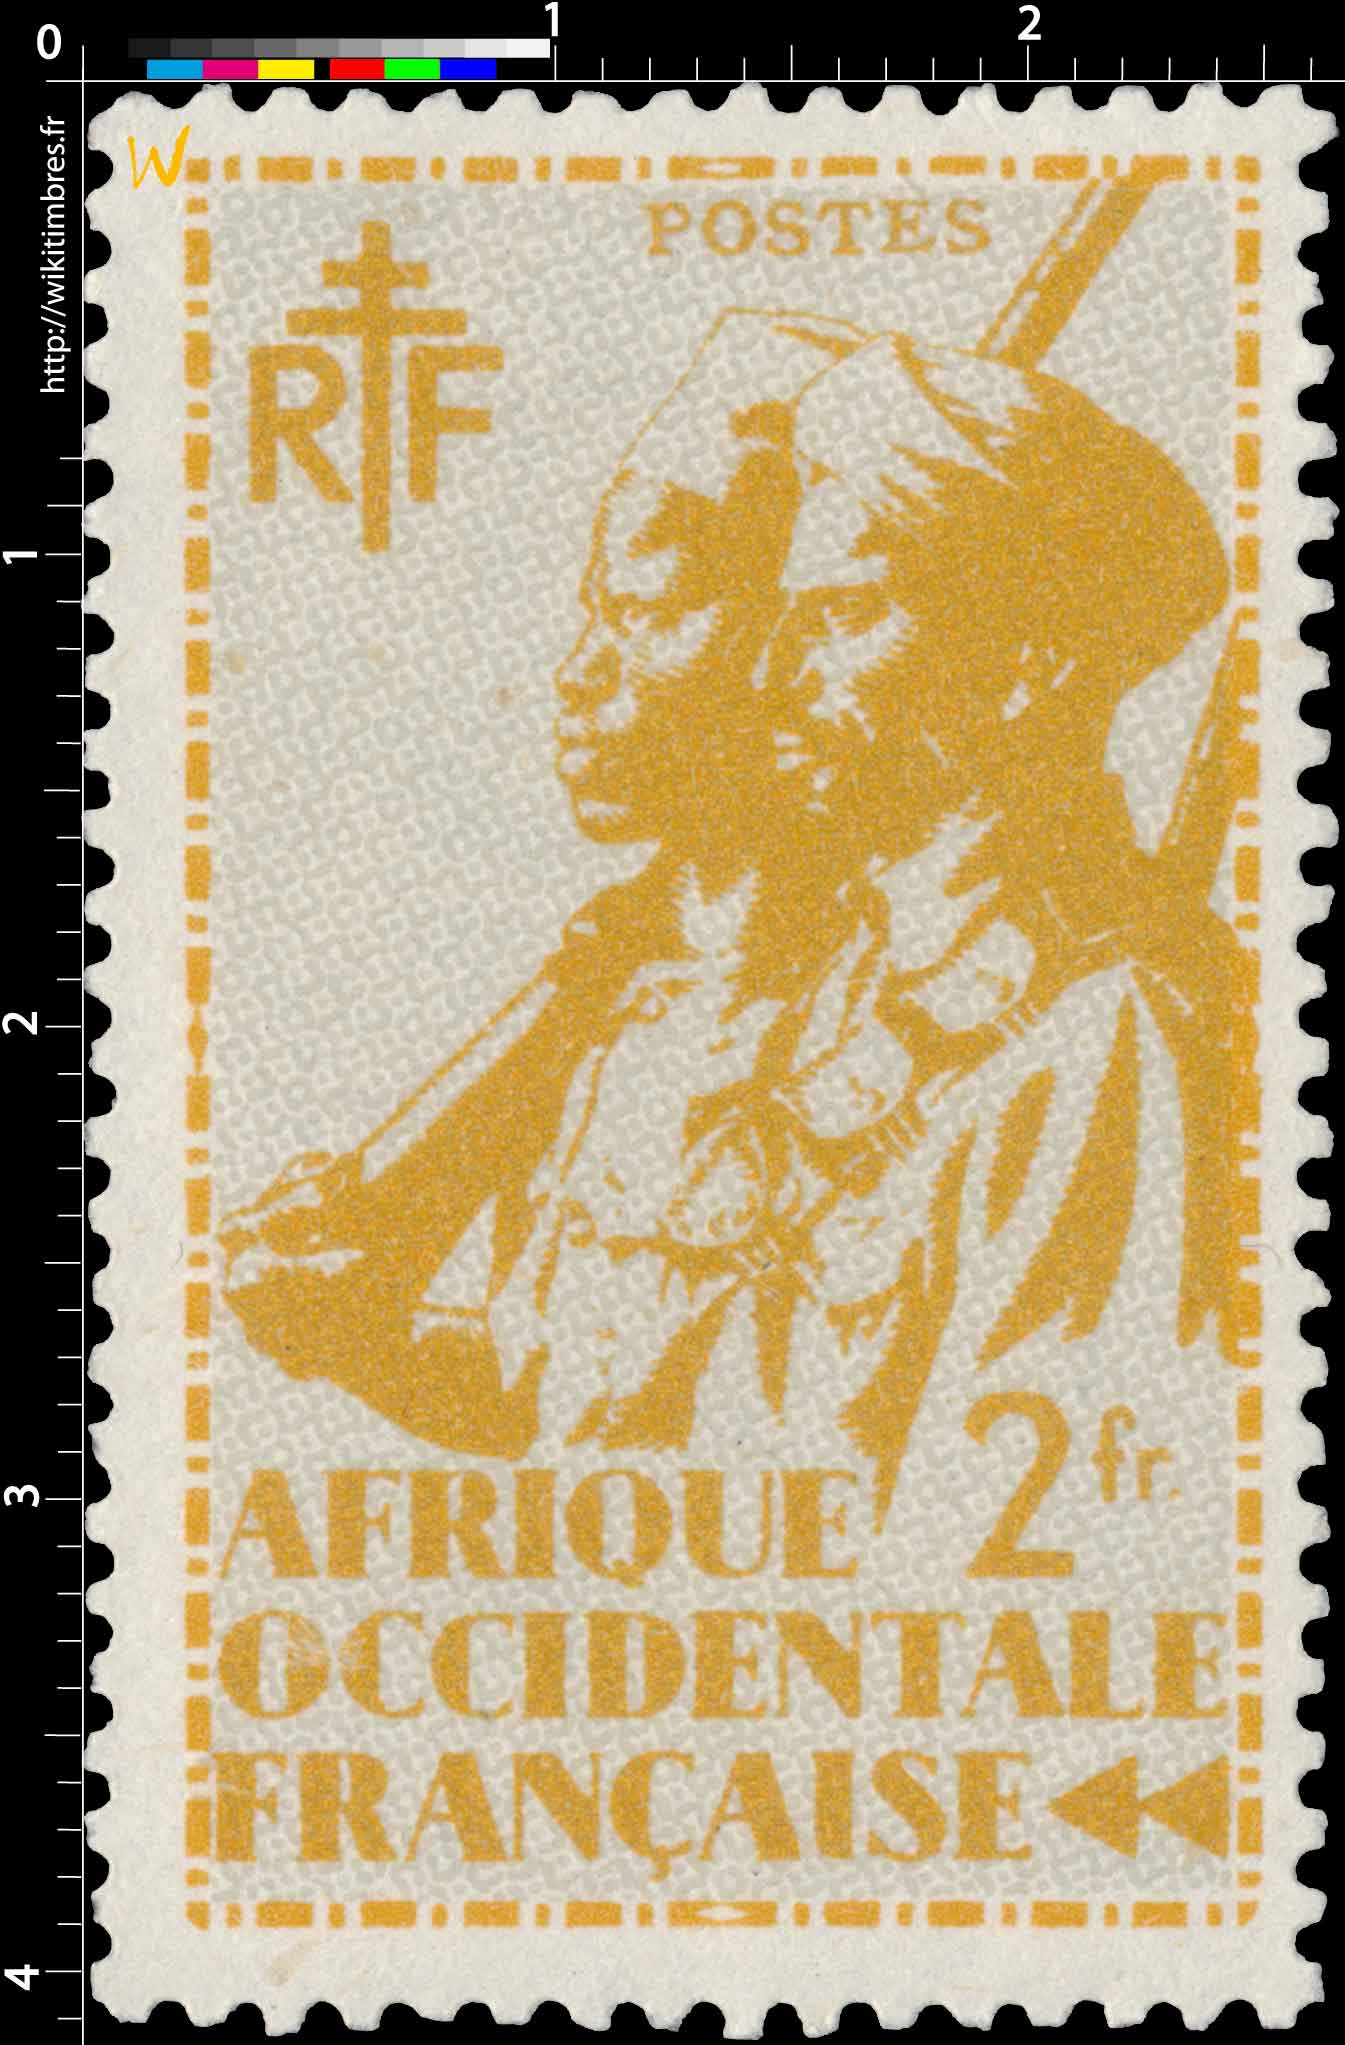 Afrique Occidentale Française - type tirailleur Sénégalais et cavalier Maure